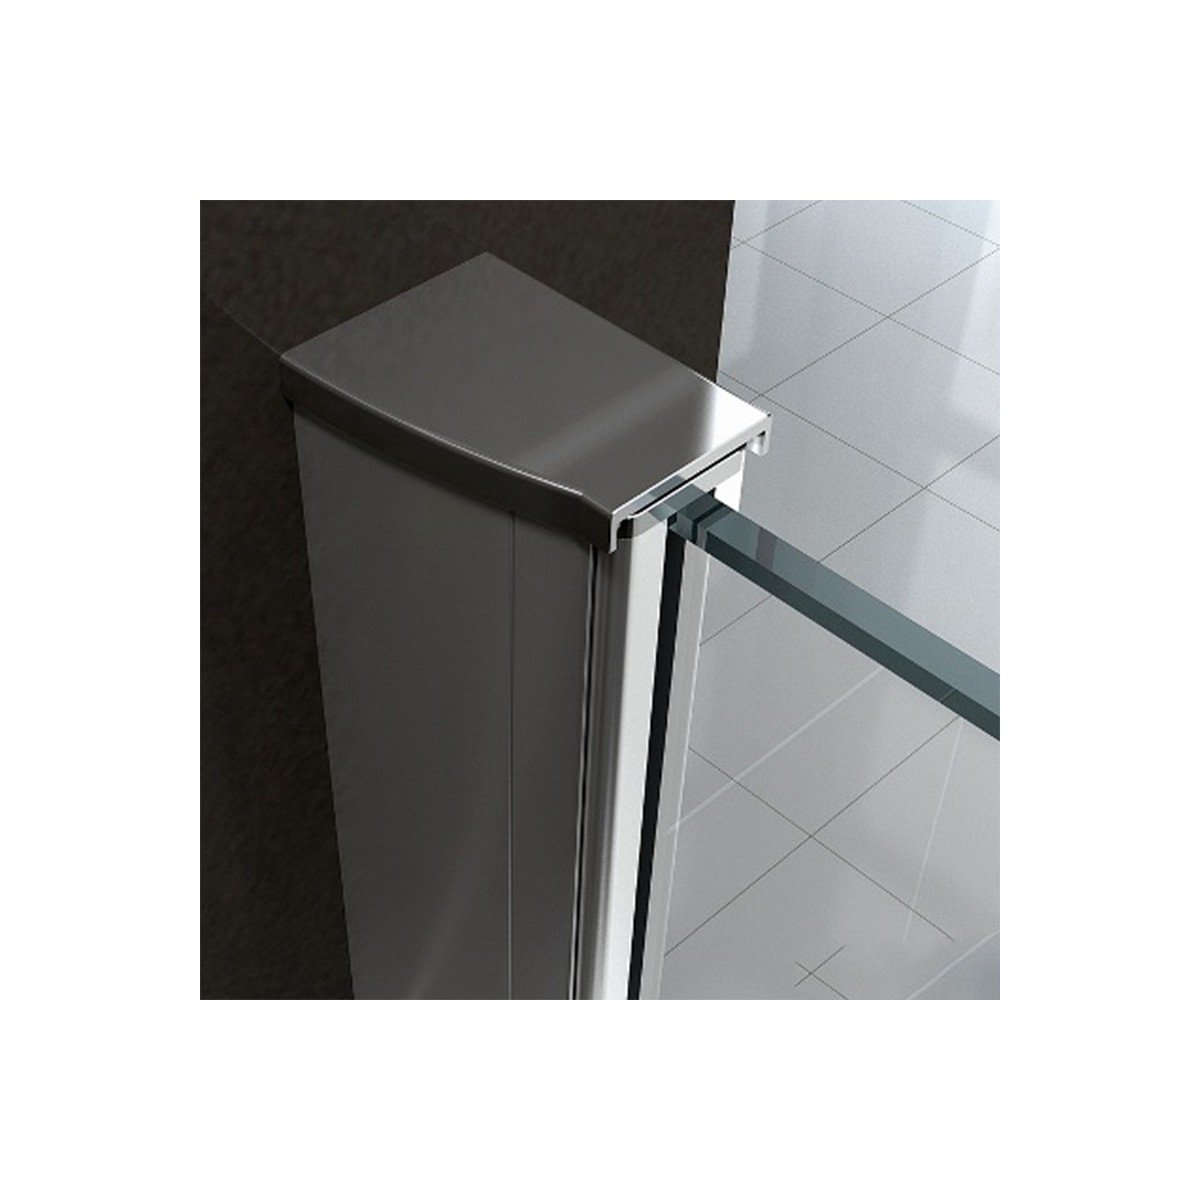 Doppelschwingtür für die Dusche, um große Abmessungen von 8 mm transparentem Kristall zu erhalten, Modell Amanda